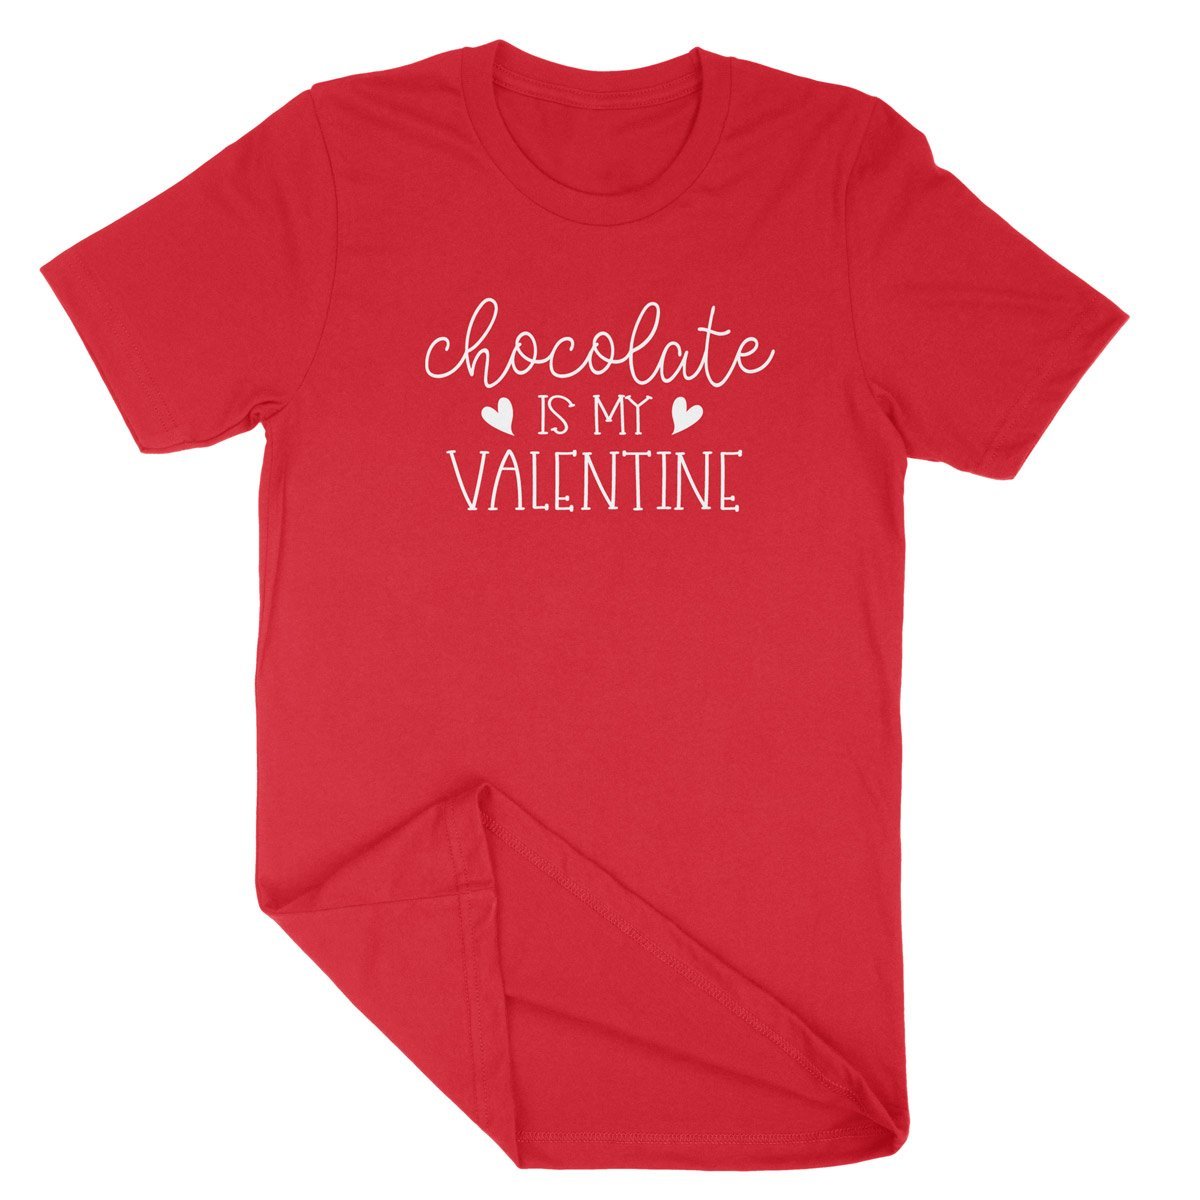 Chocolate is my Valentine - T ShirtT-shirt - My E Three